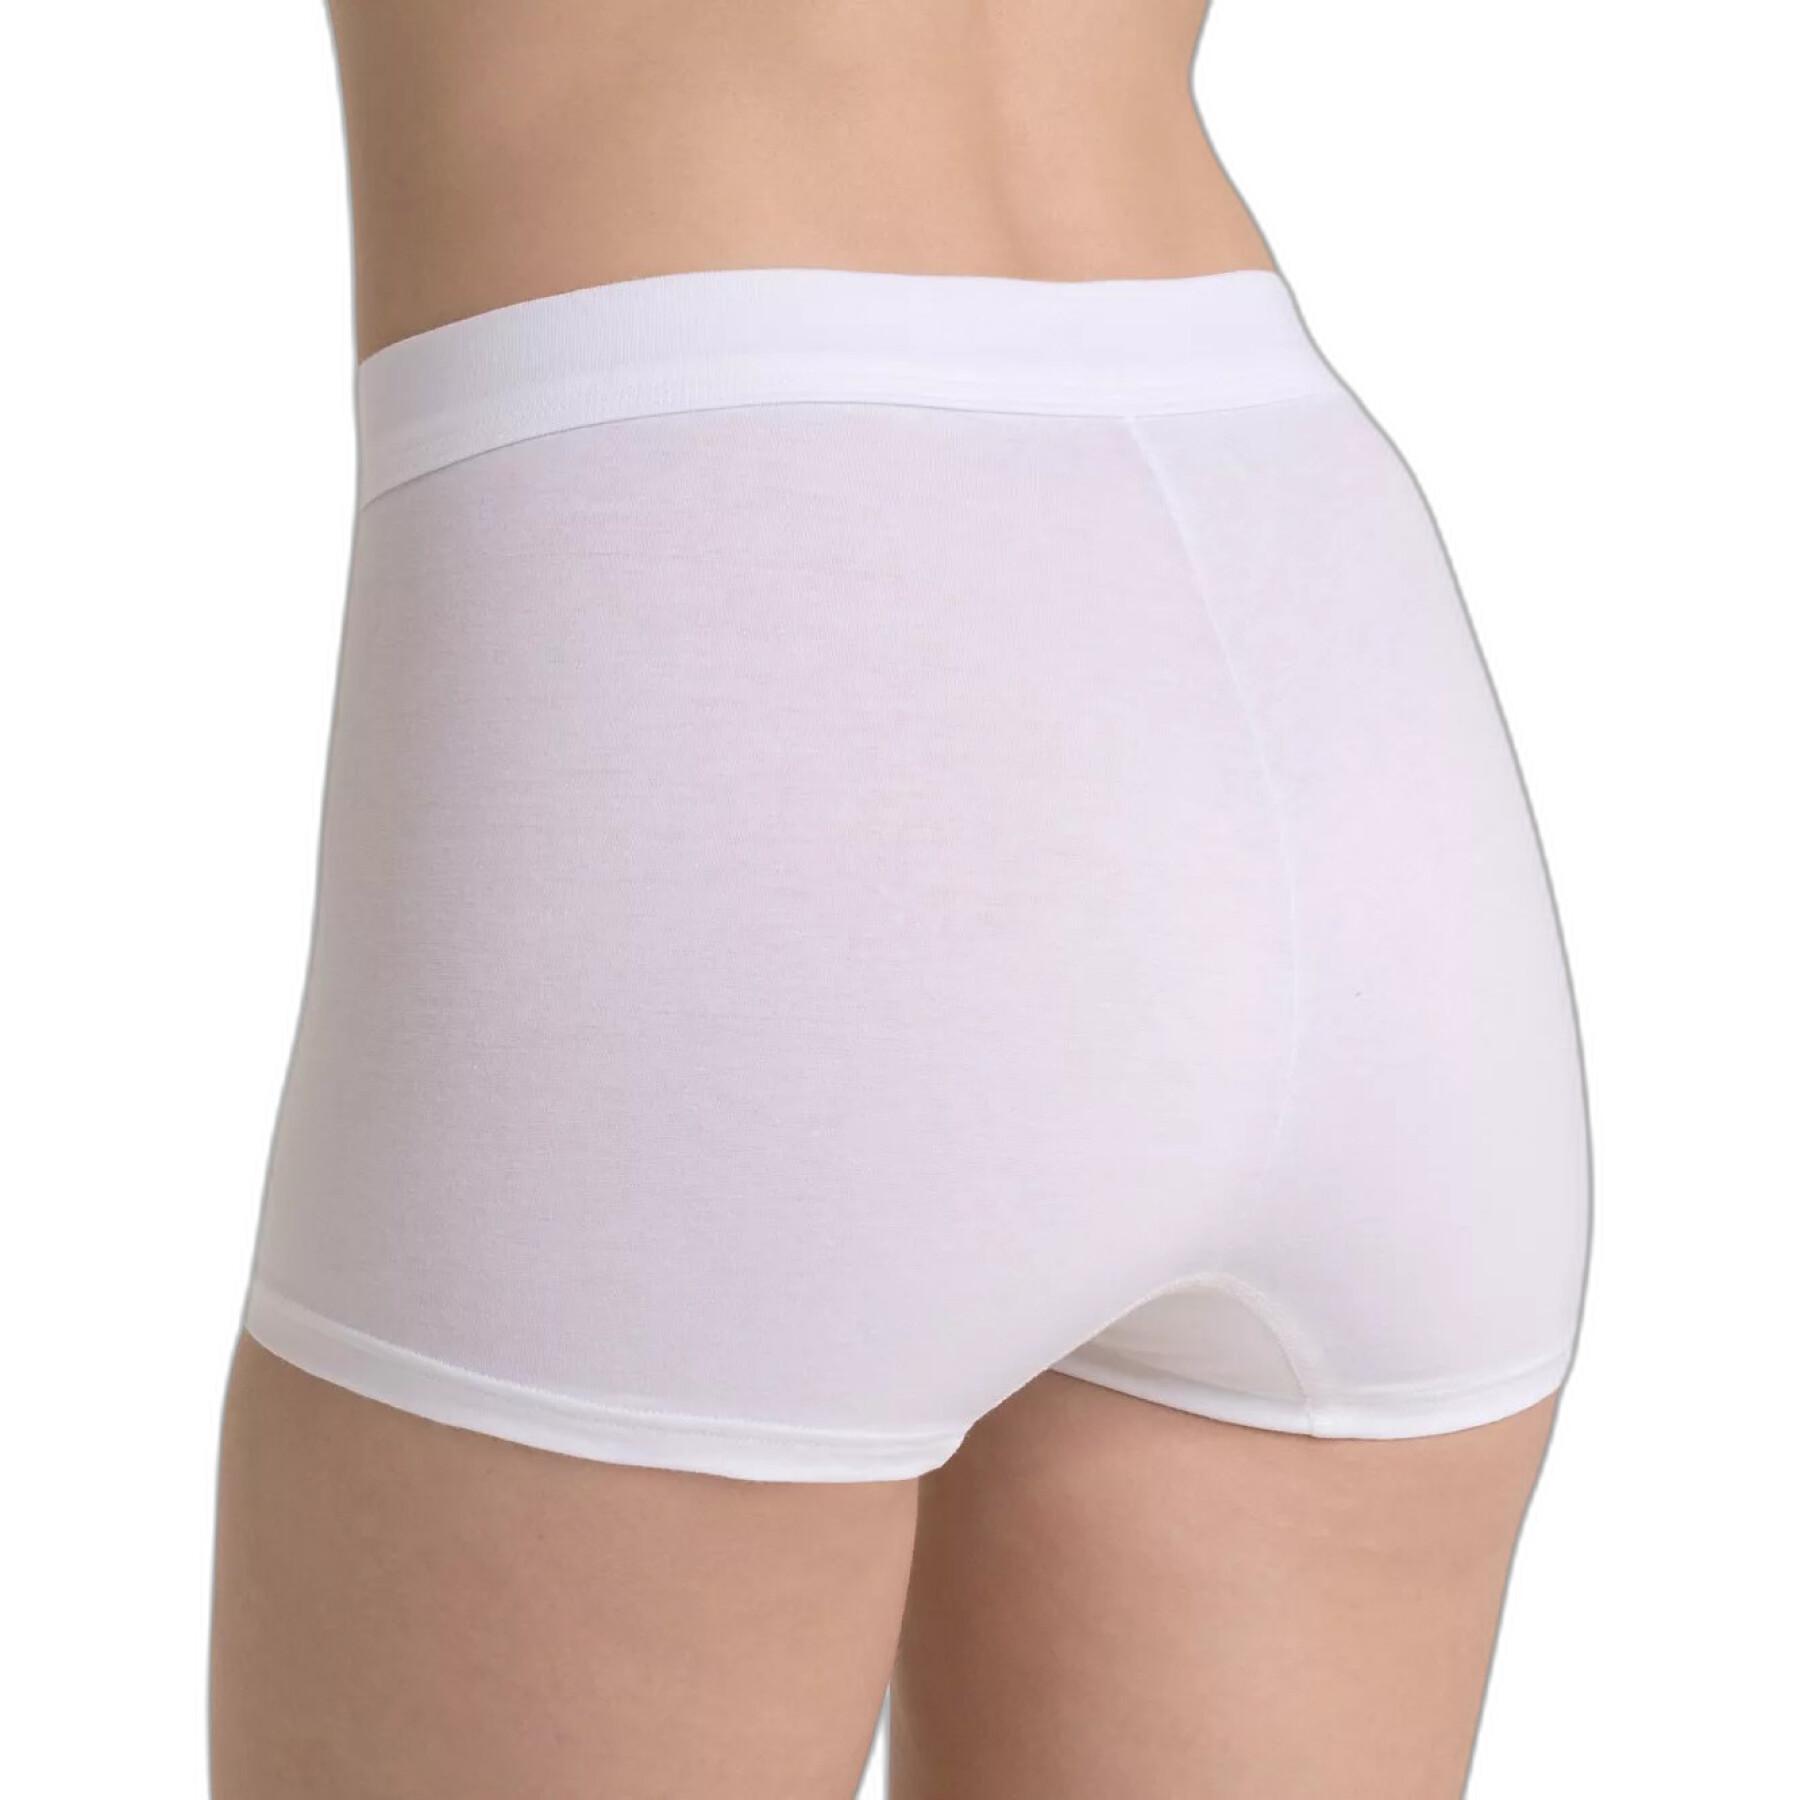 Women's panties Sloggi Double Comfort